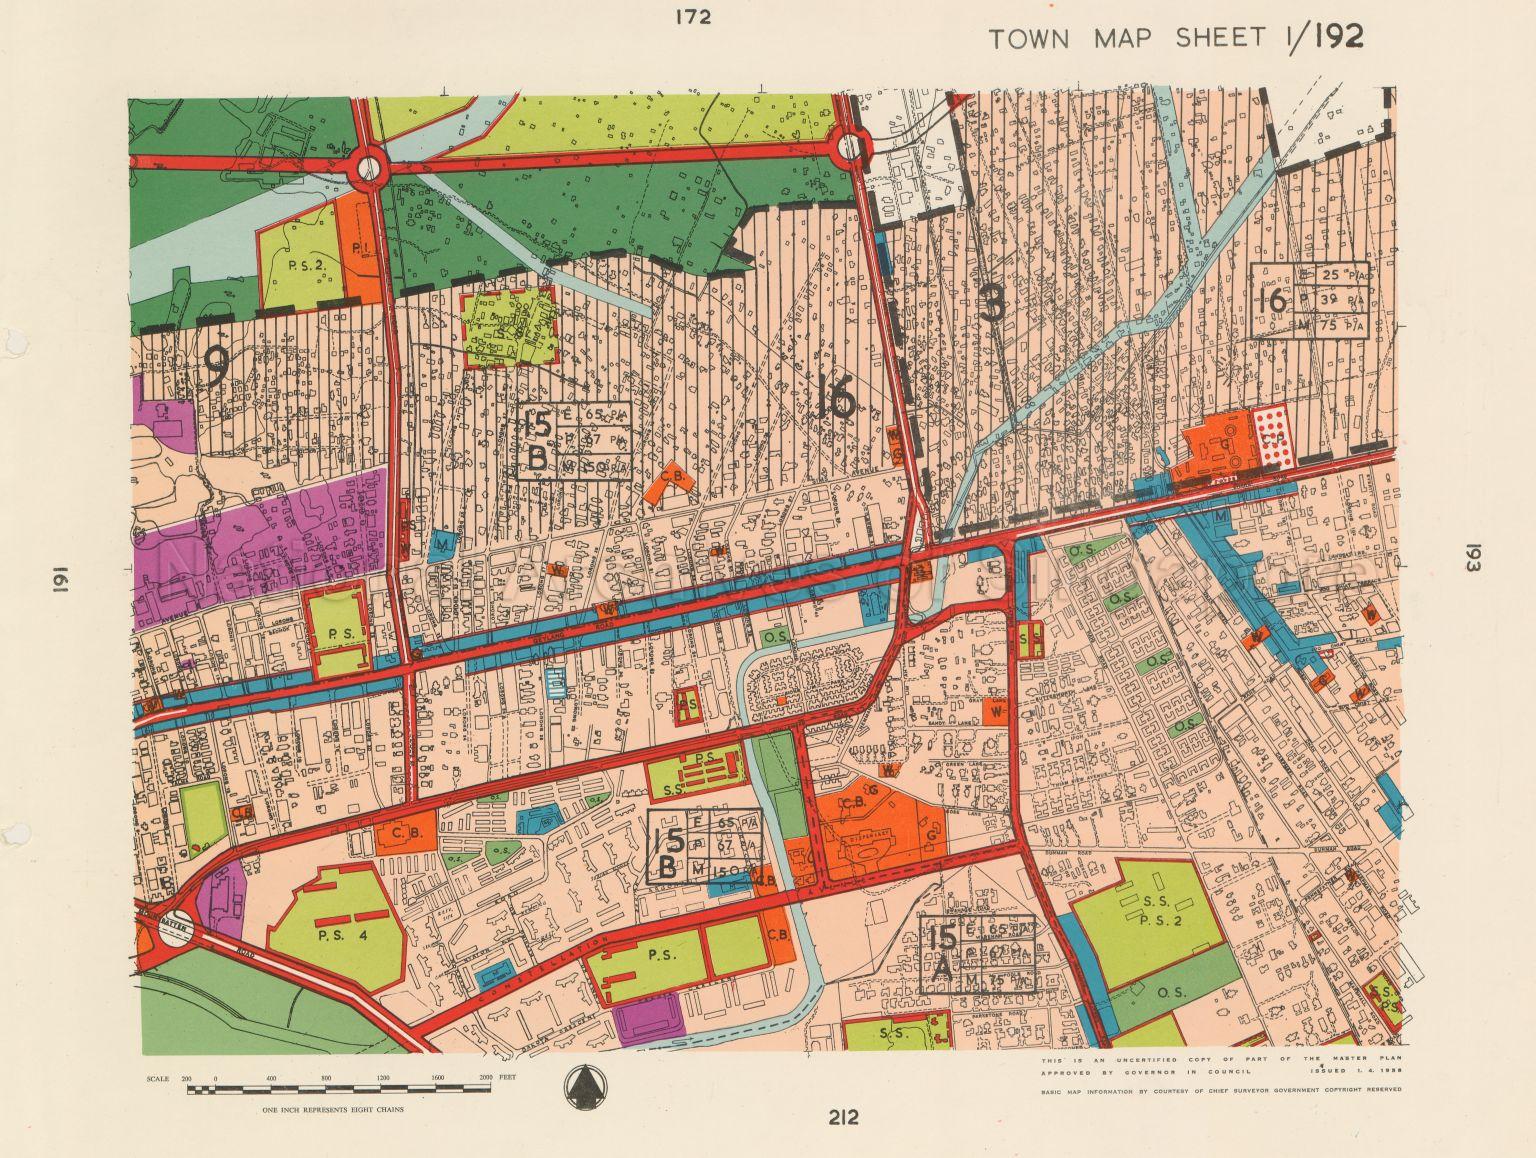 1958 Master Plan: Town Map Sheet 1/192